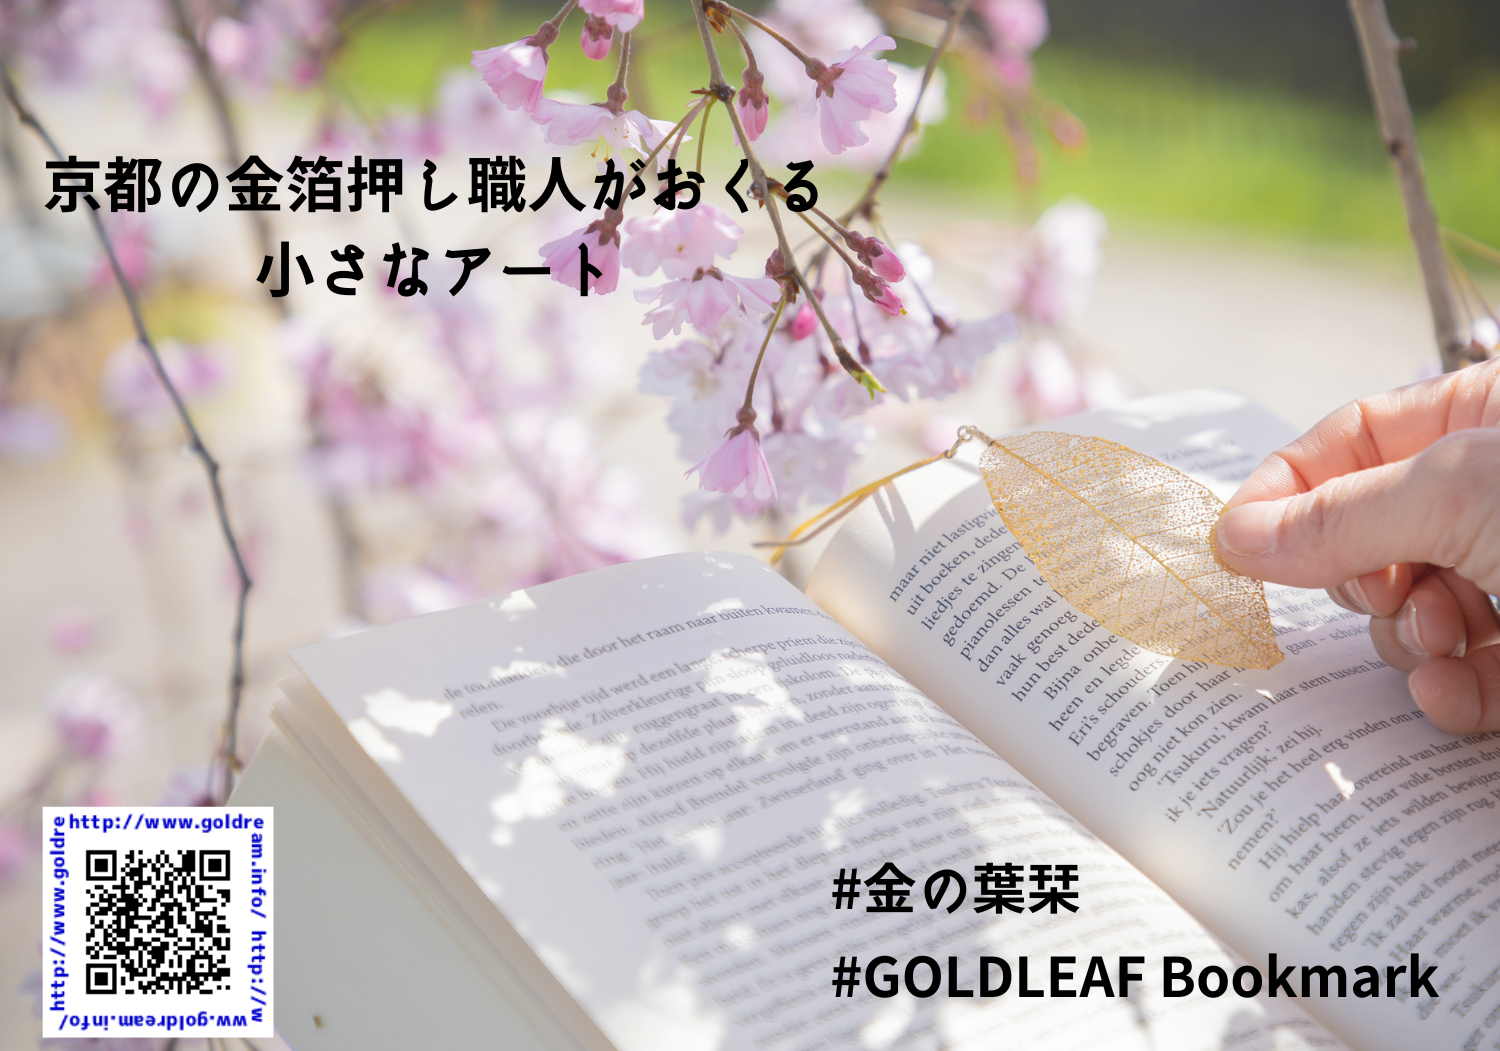 GOLD LEAF bookmark  京都の職人がおくる小さなアート